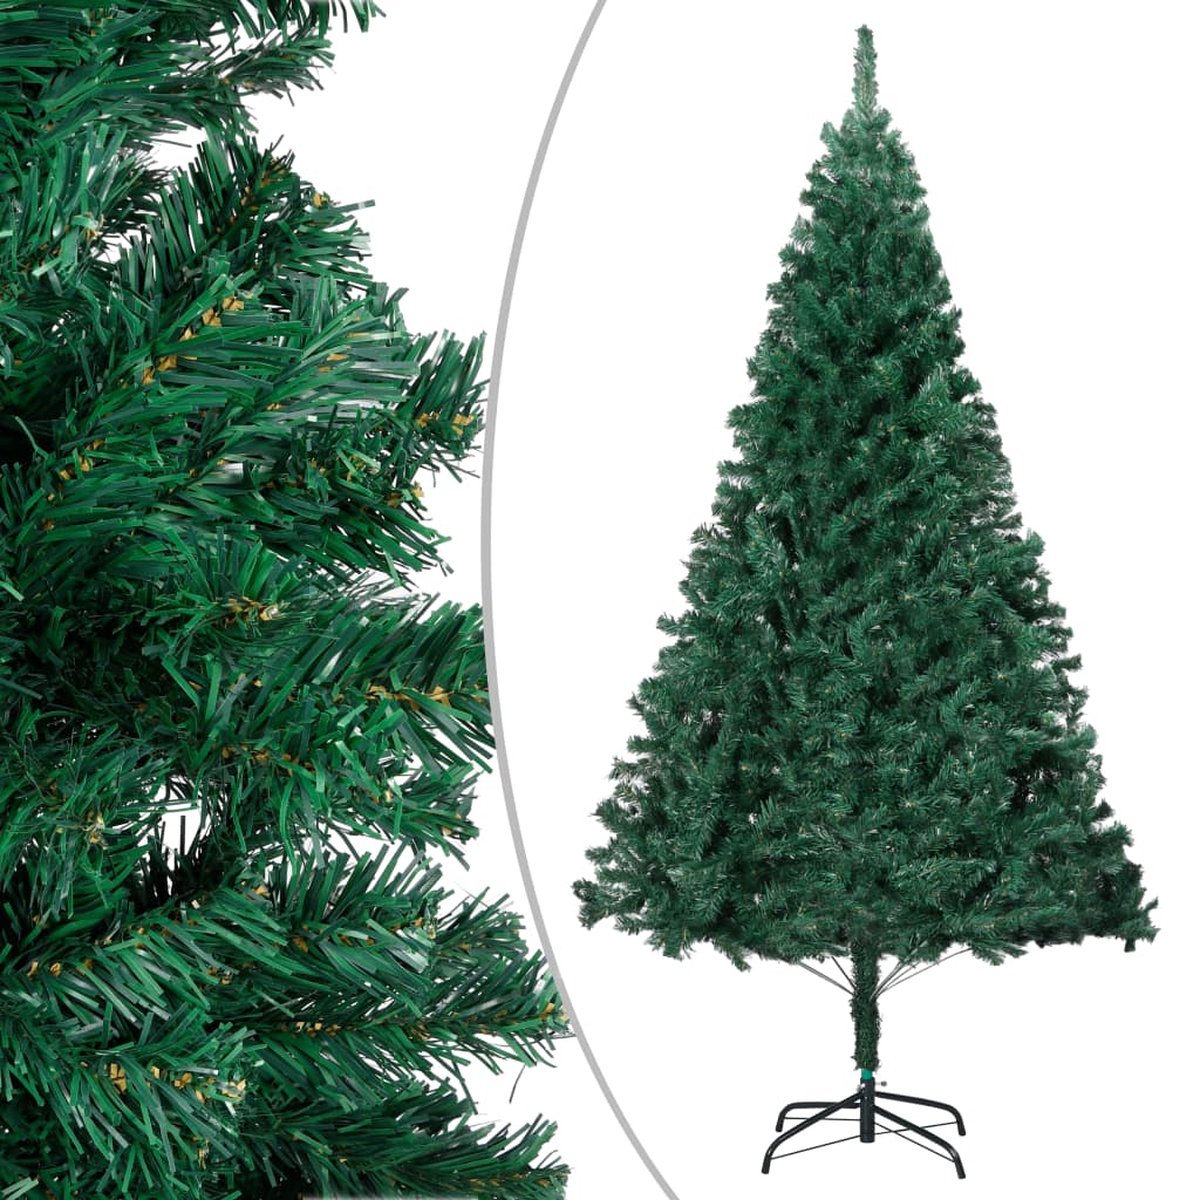 VidaLife Kunstkerstboom met dikke takken 240 cm PVC groen